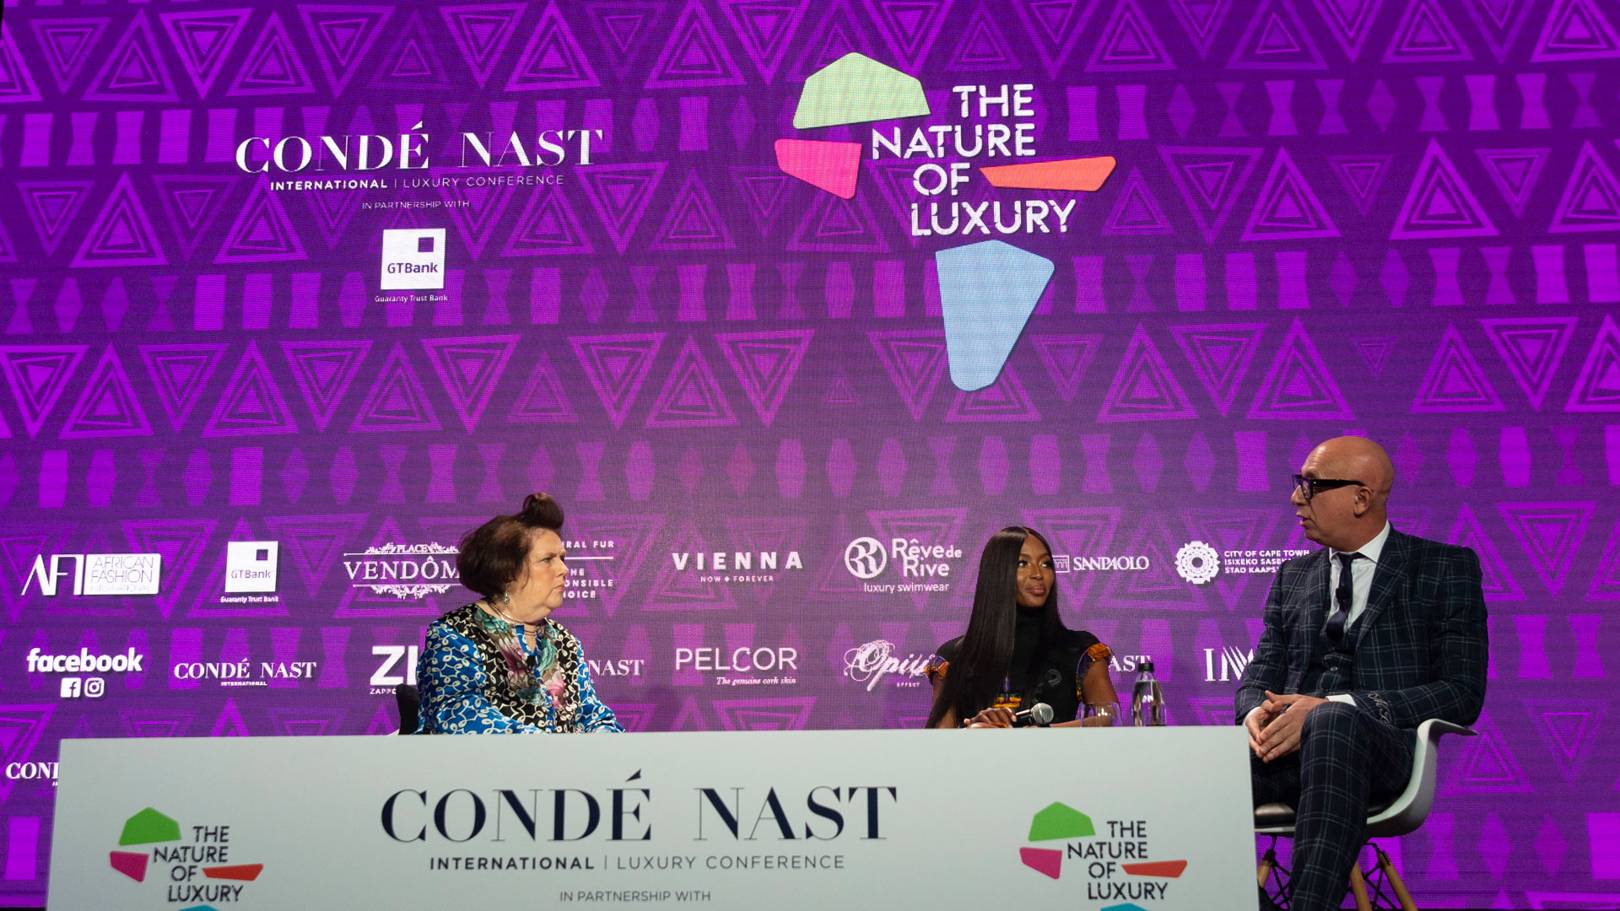 “75% dos millenials escolhem marcas de luxo após analisar suas políticas sustentáveis” | Confira destaques da Condé Nast International Luxury Conference 2019